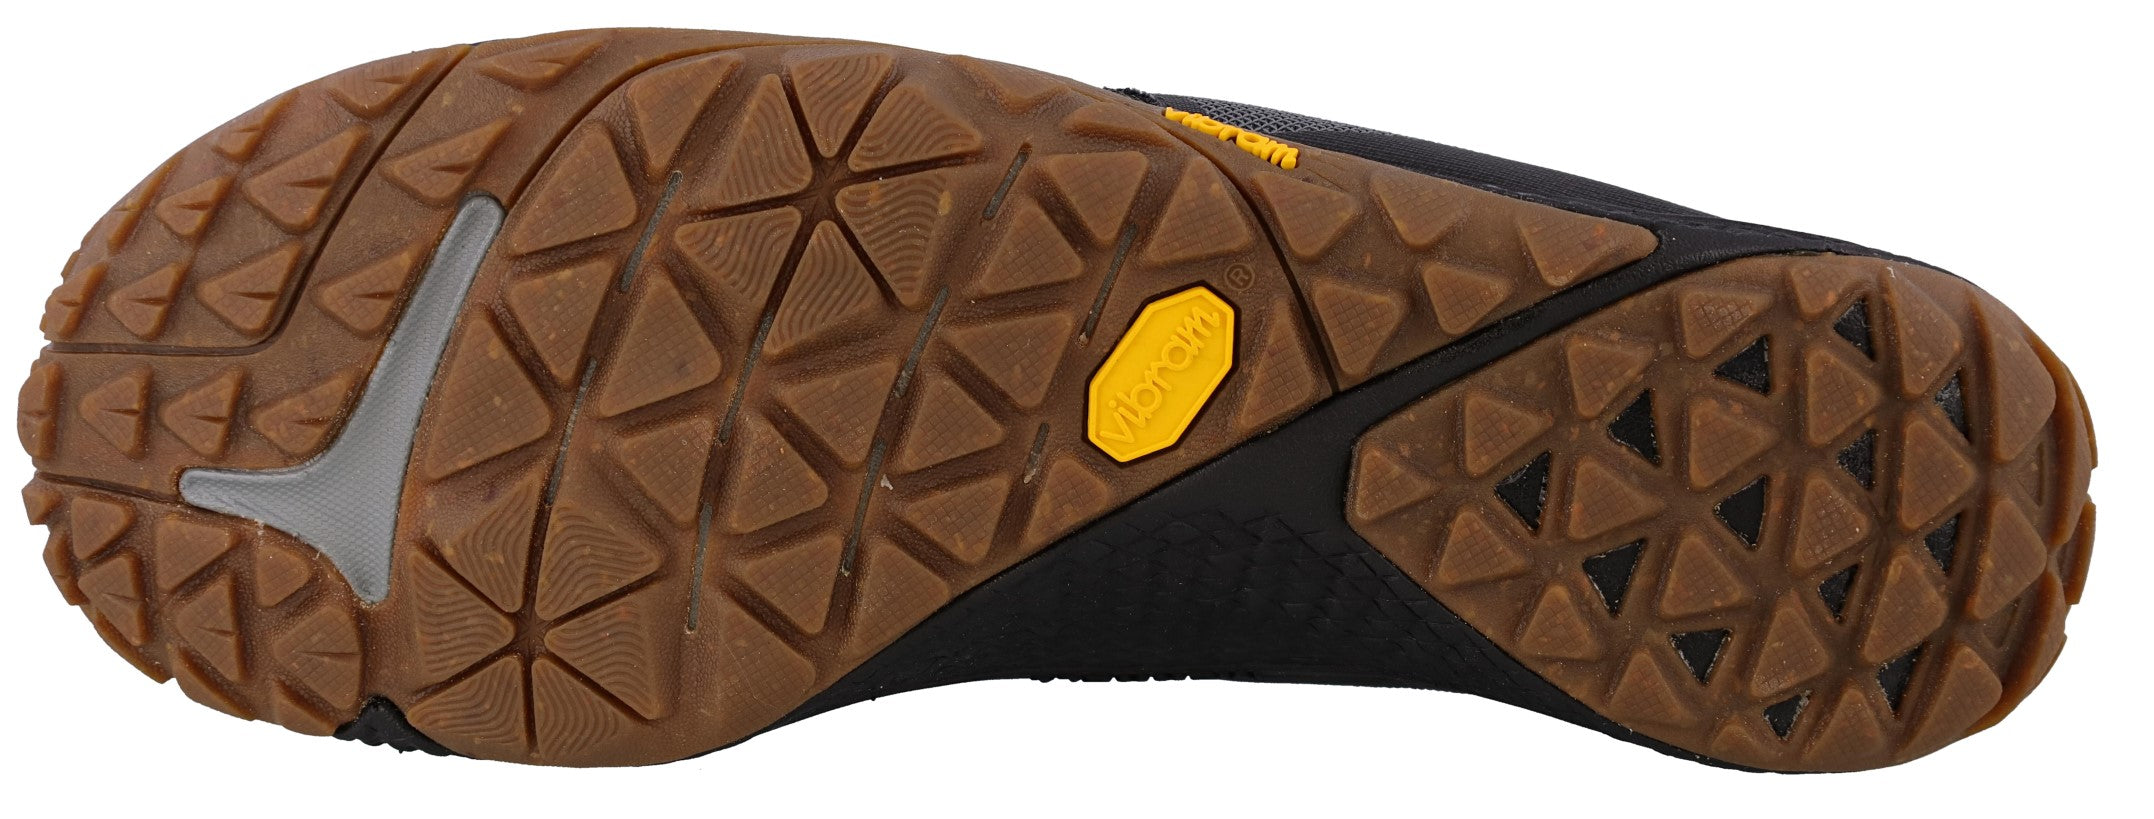 Zapatillas Minimalistas Merrell Online Baratas - Trail Glove 6 Eco